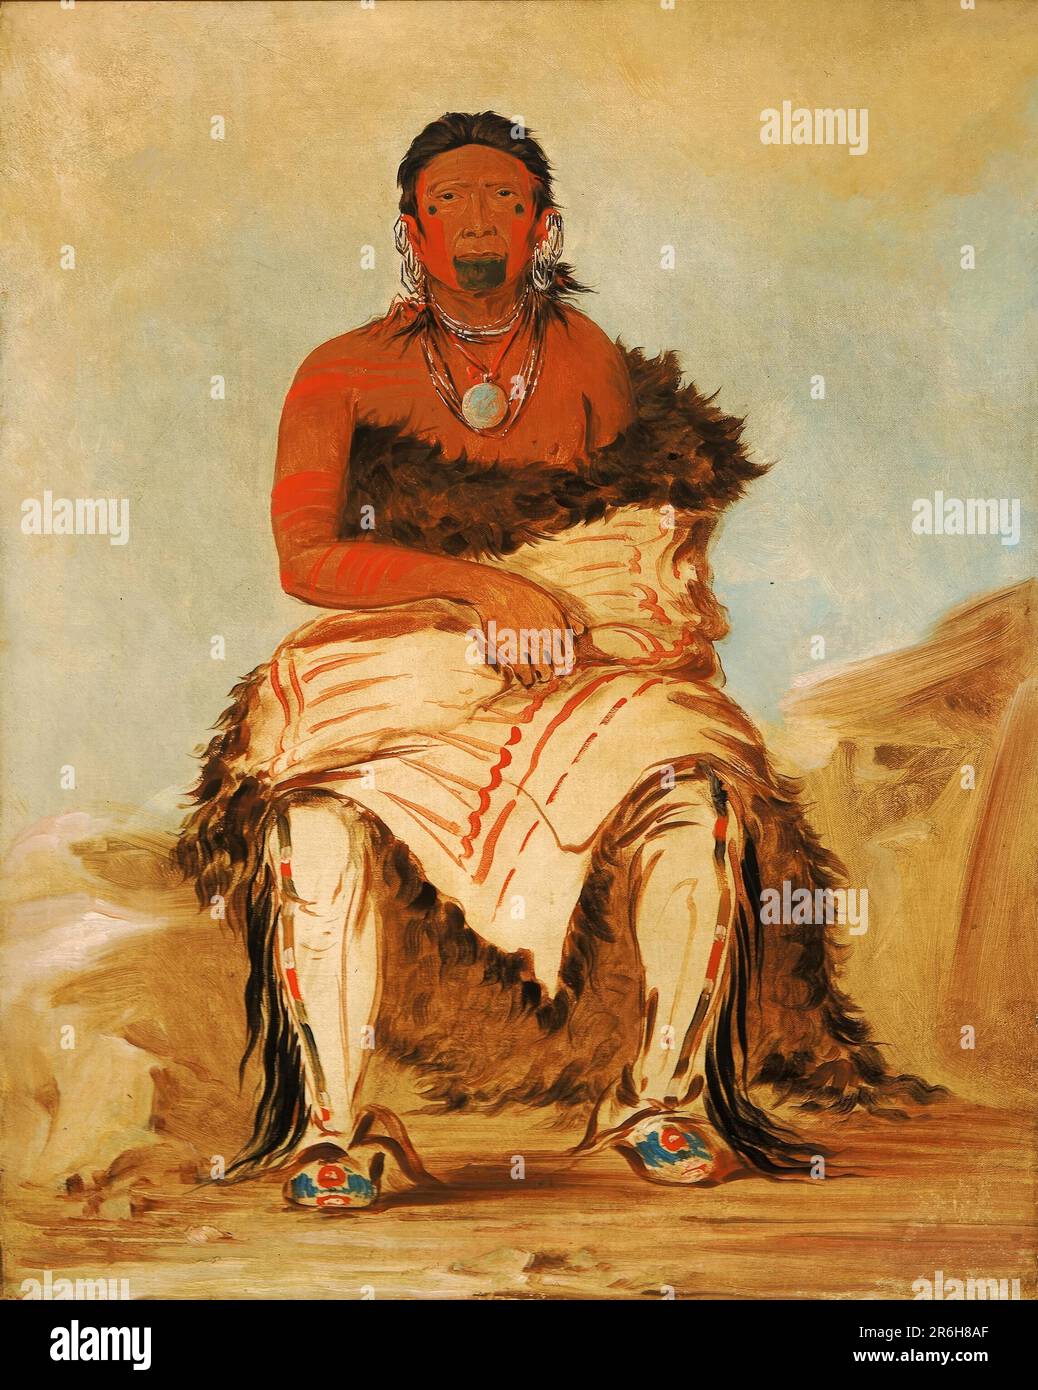 lá-shah-le-stáw-hix, man Chief, ein republikanischer Pawnee. Öl auf Segeltuch. Datum: 1832. Museum: Smithsonian American Art Museum. Stockfoto